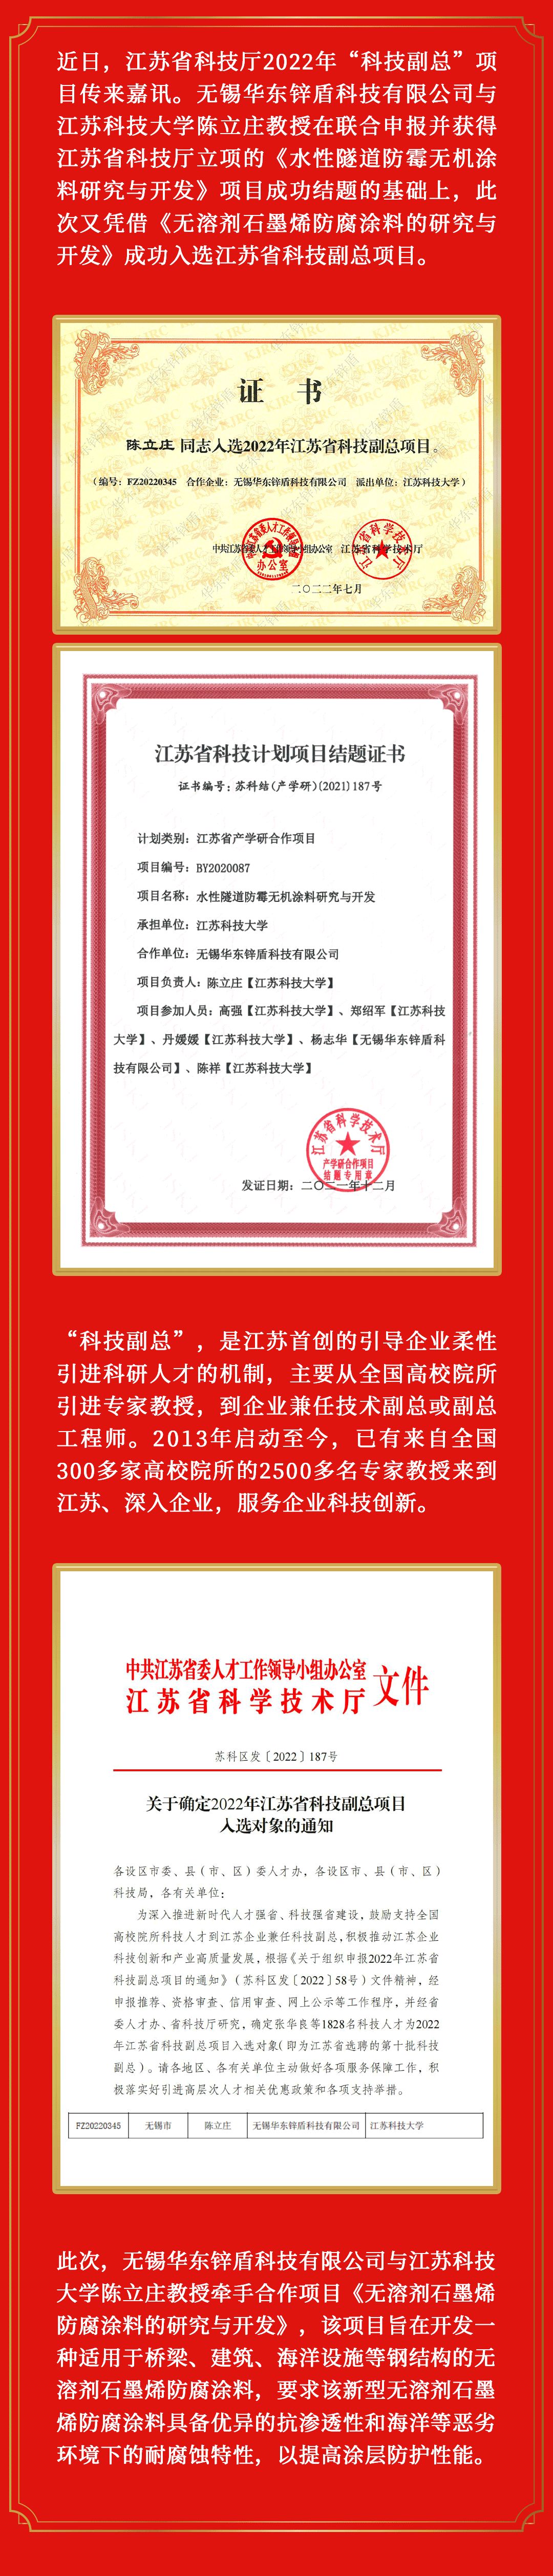 锌喜讯丨祝贺无锡华东锌盾科技有限公司成功入选江苏省科技副总项目